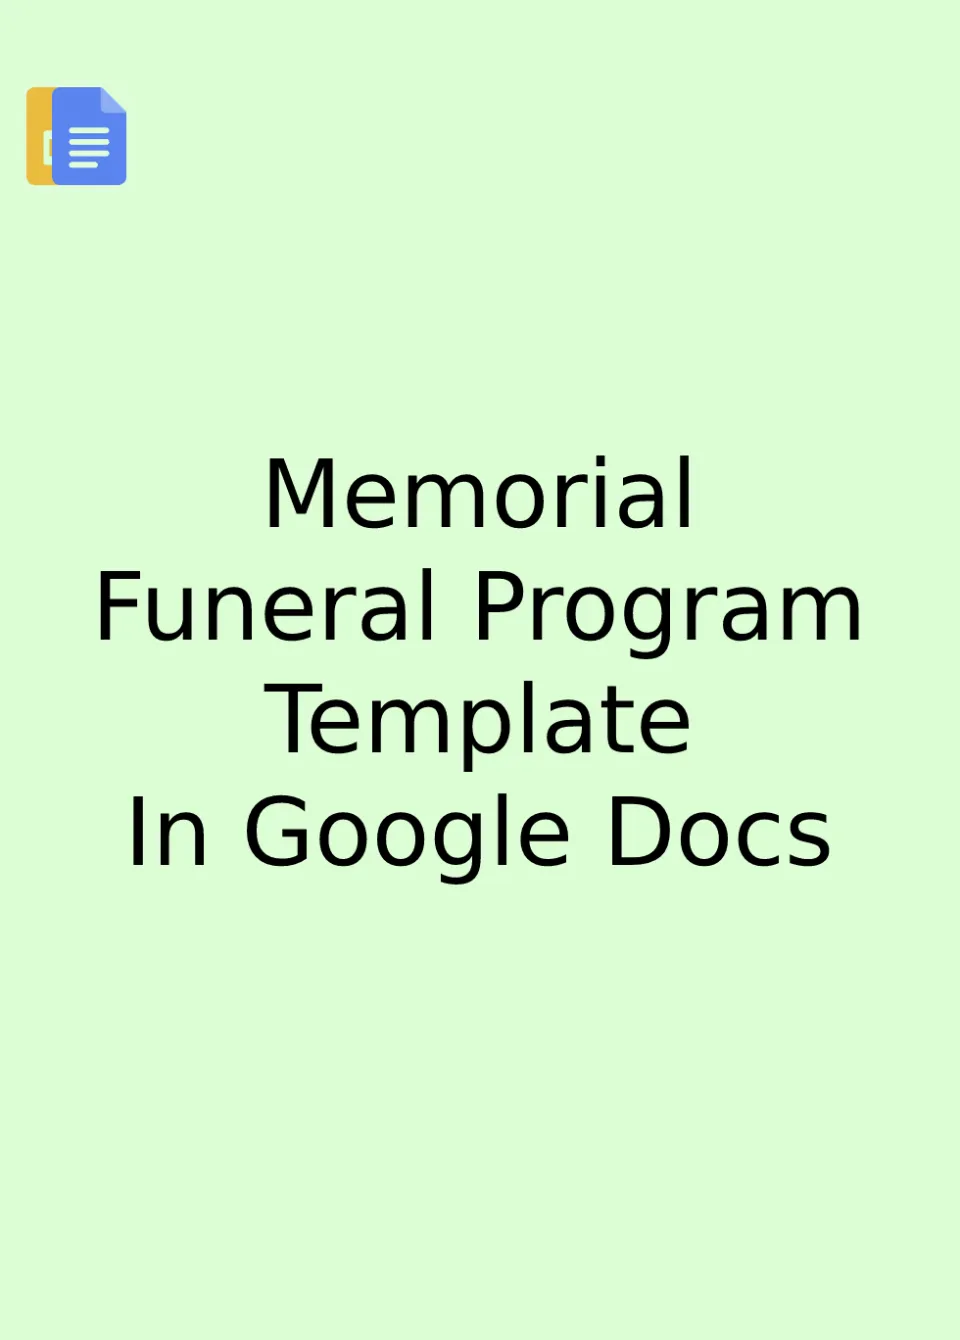 Memorial Funeral Program Template Google Docs